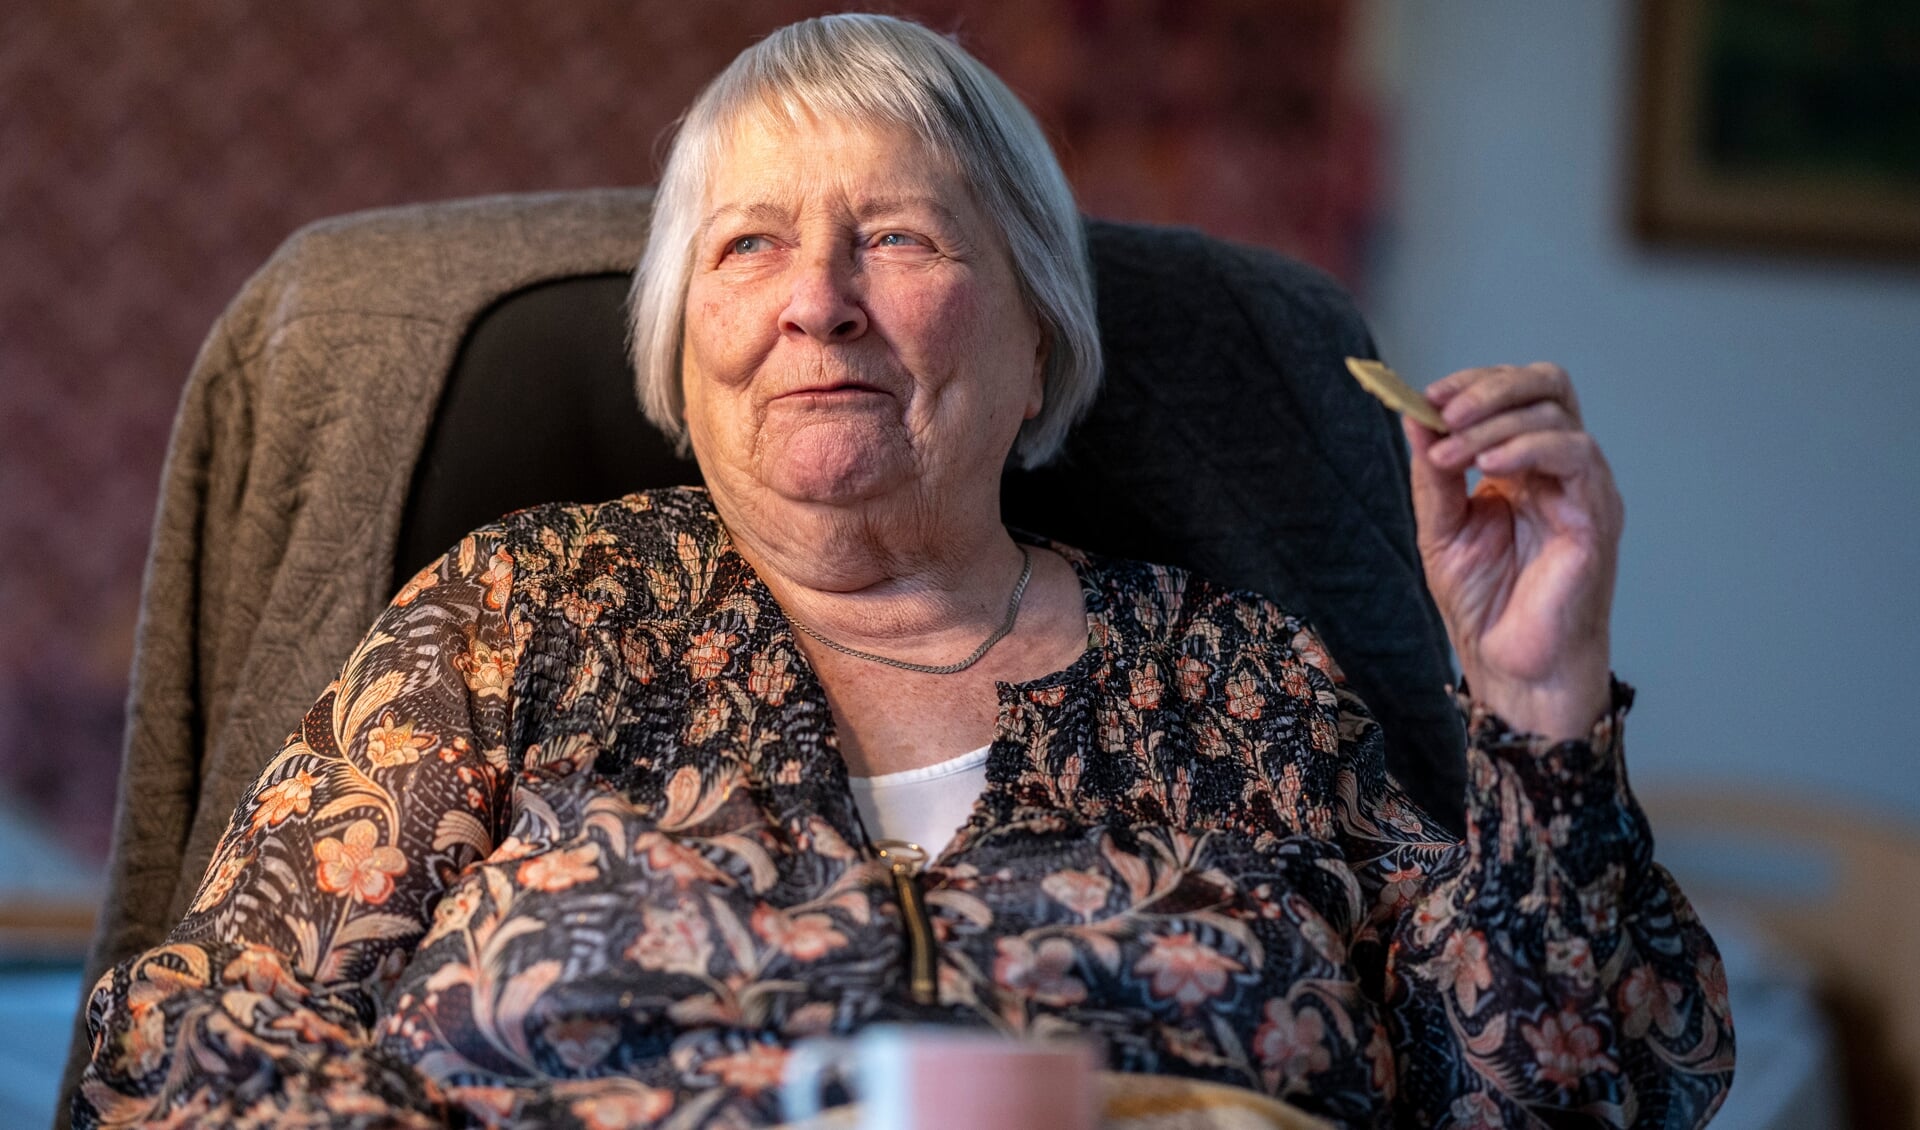 Hun strittede lidt imod, men har erkendt, at det nok var godt nok, hun kom på plejehjem: - Jeg er godt tilfreds her, siger Hedwig »Hedi« Lorenzen, der fylder 90 år den 7. marts.